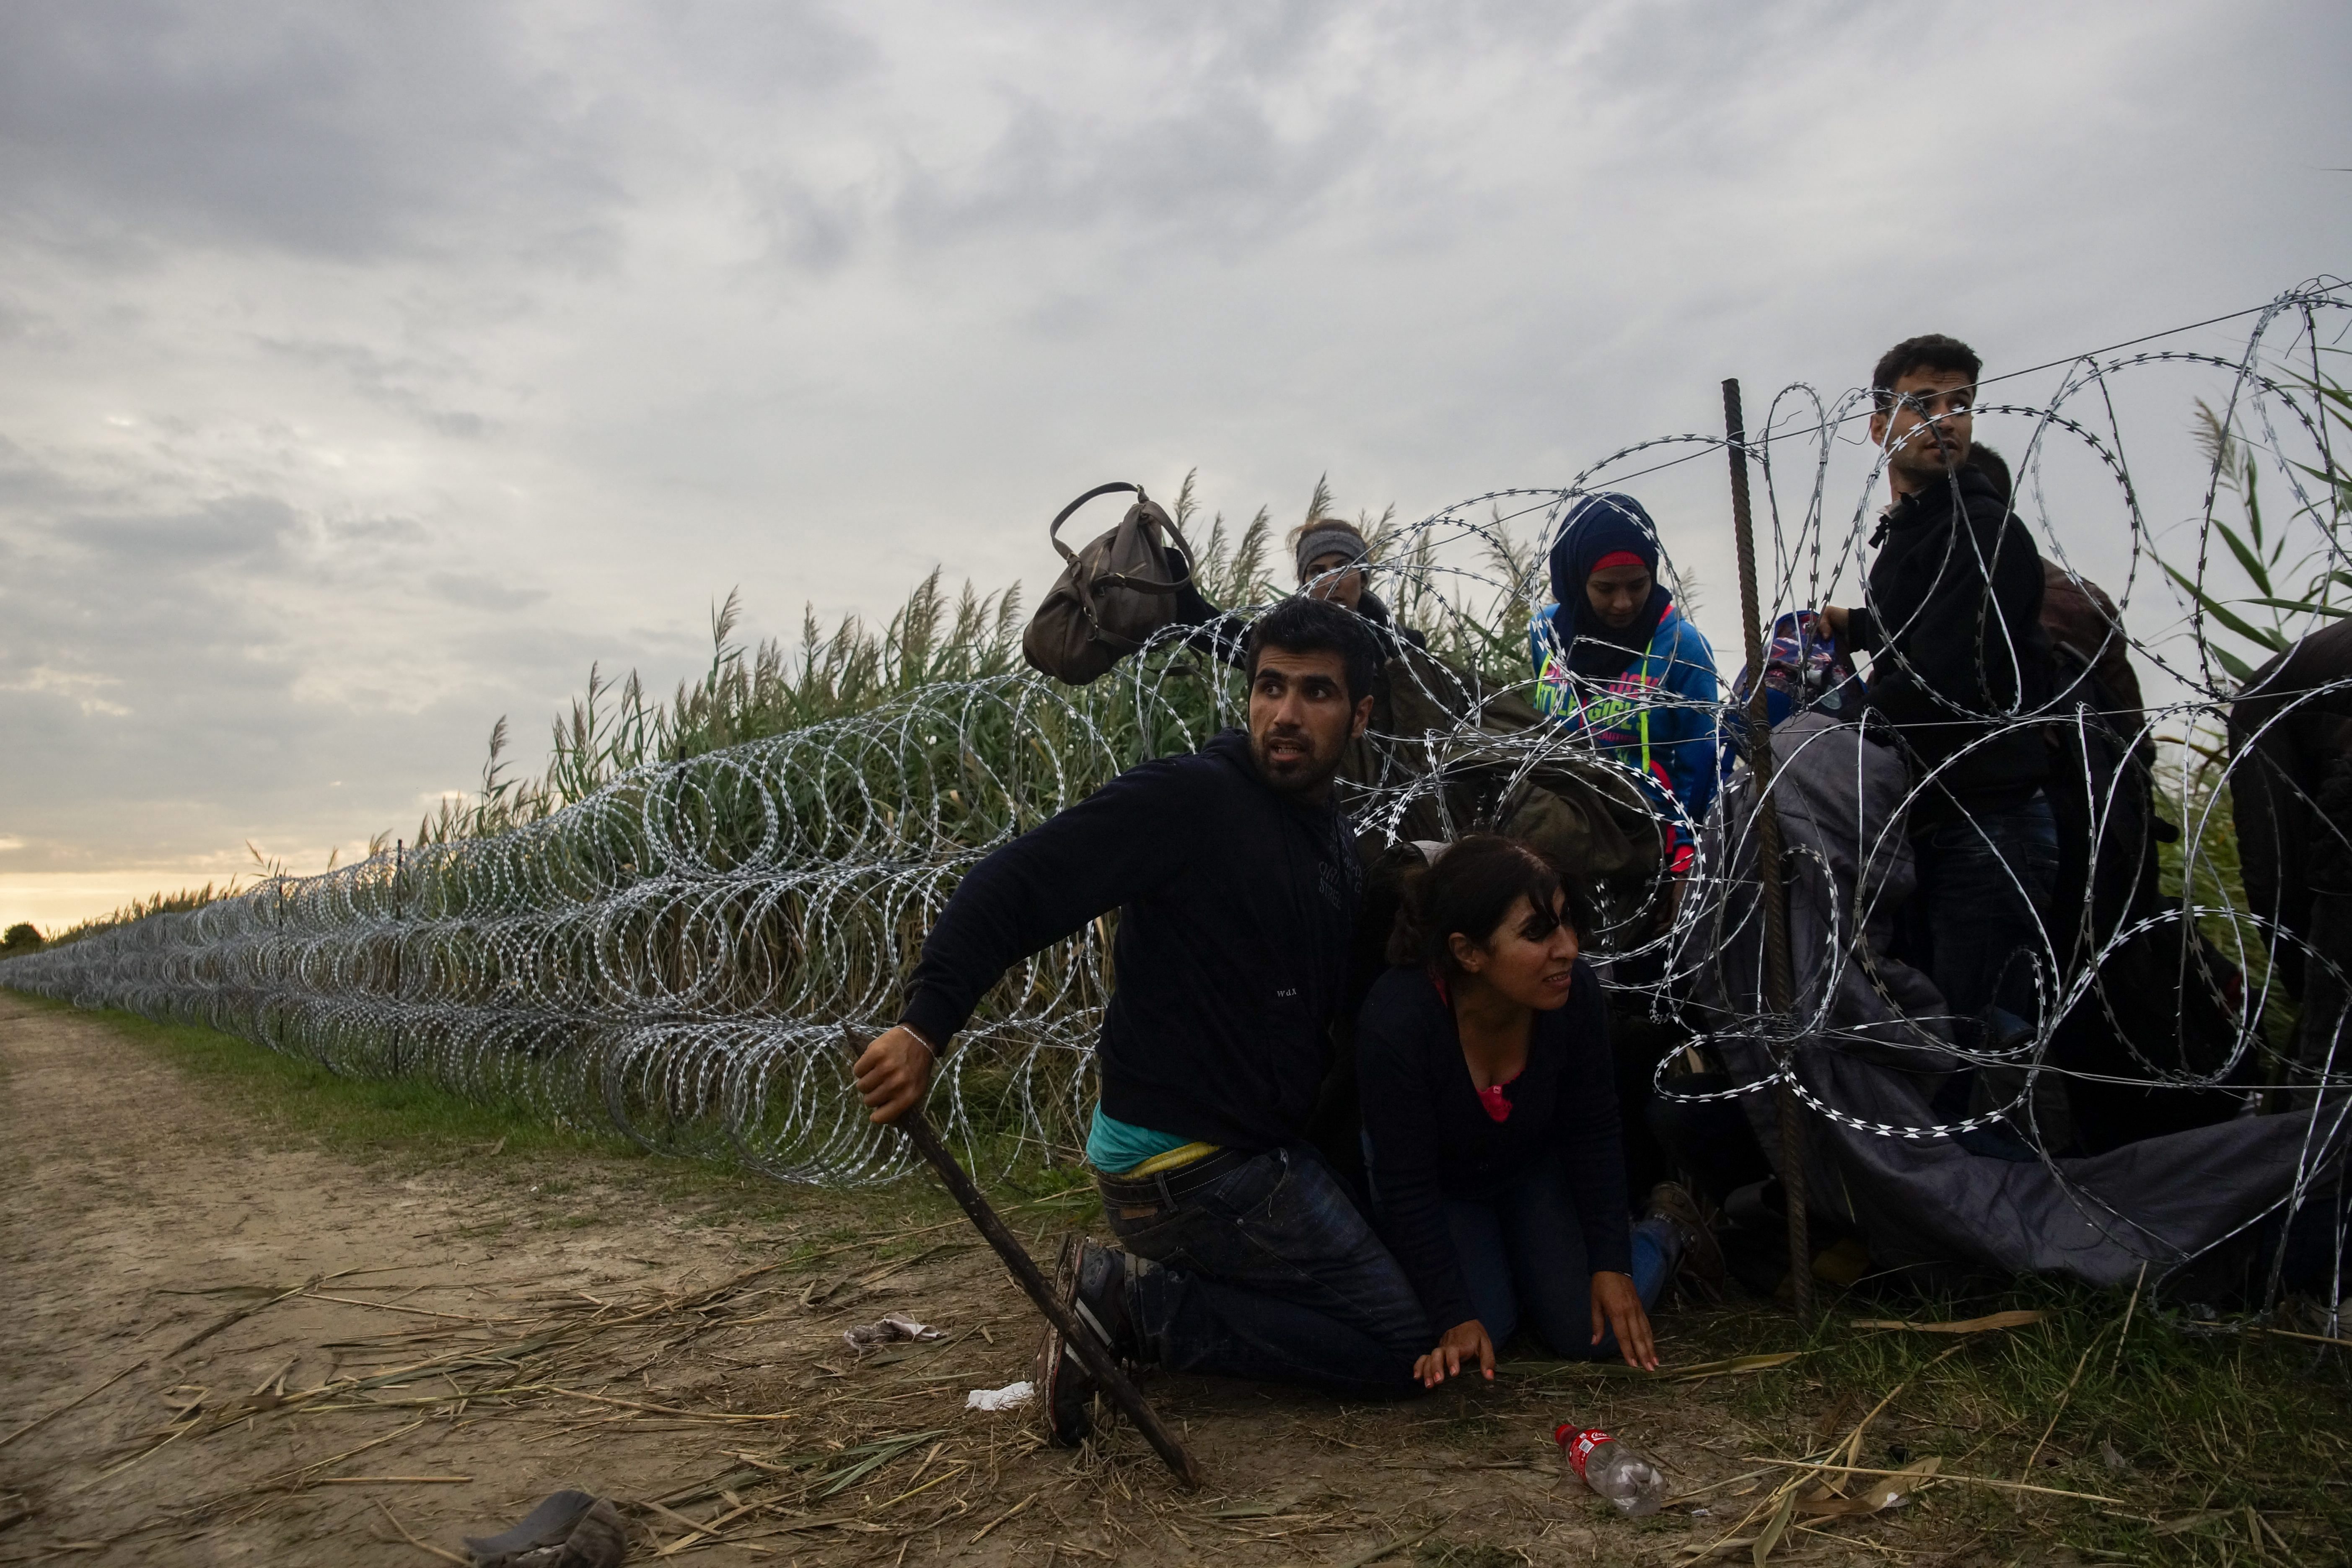 Ουγγαρία: Εξευτελιστικές συνθήκες στο κέντρο προσφύγων δείχνει βίντεο